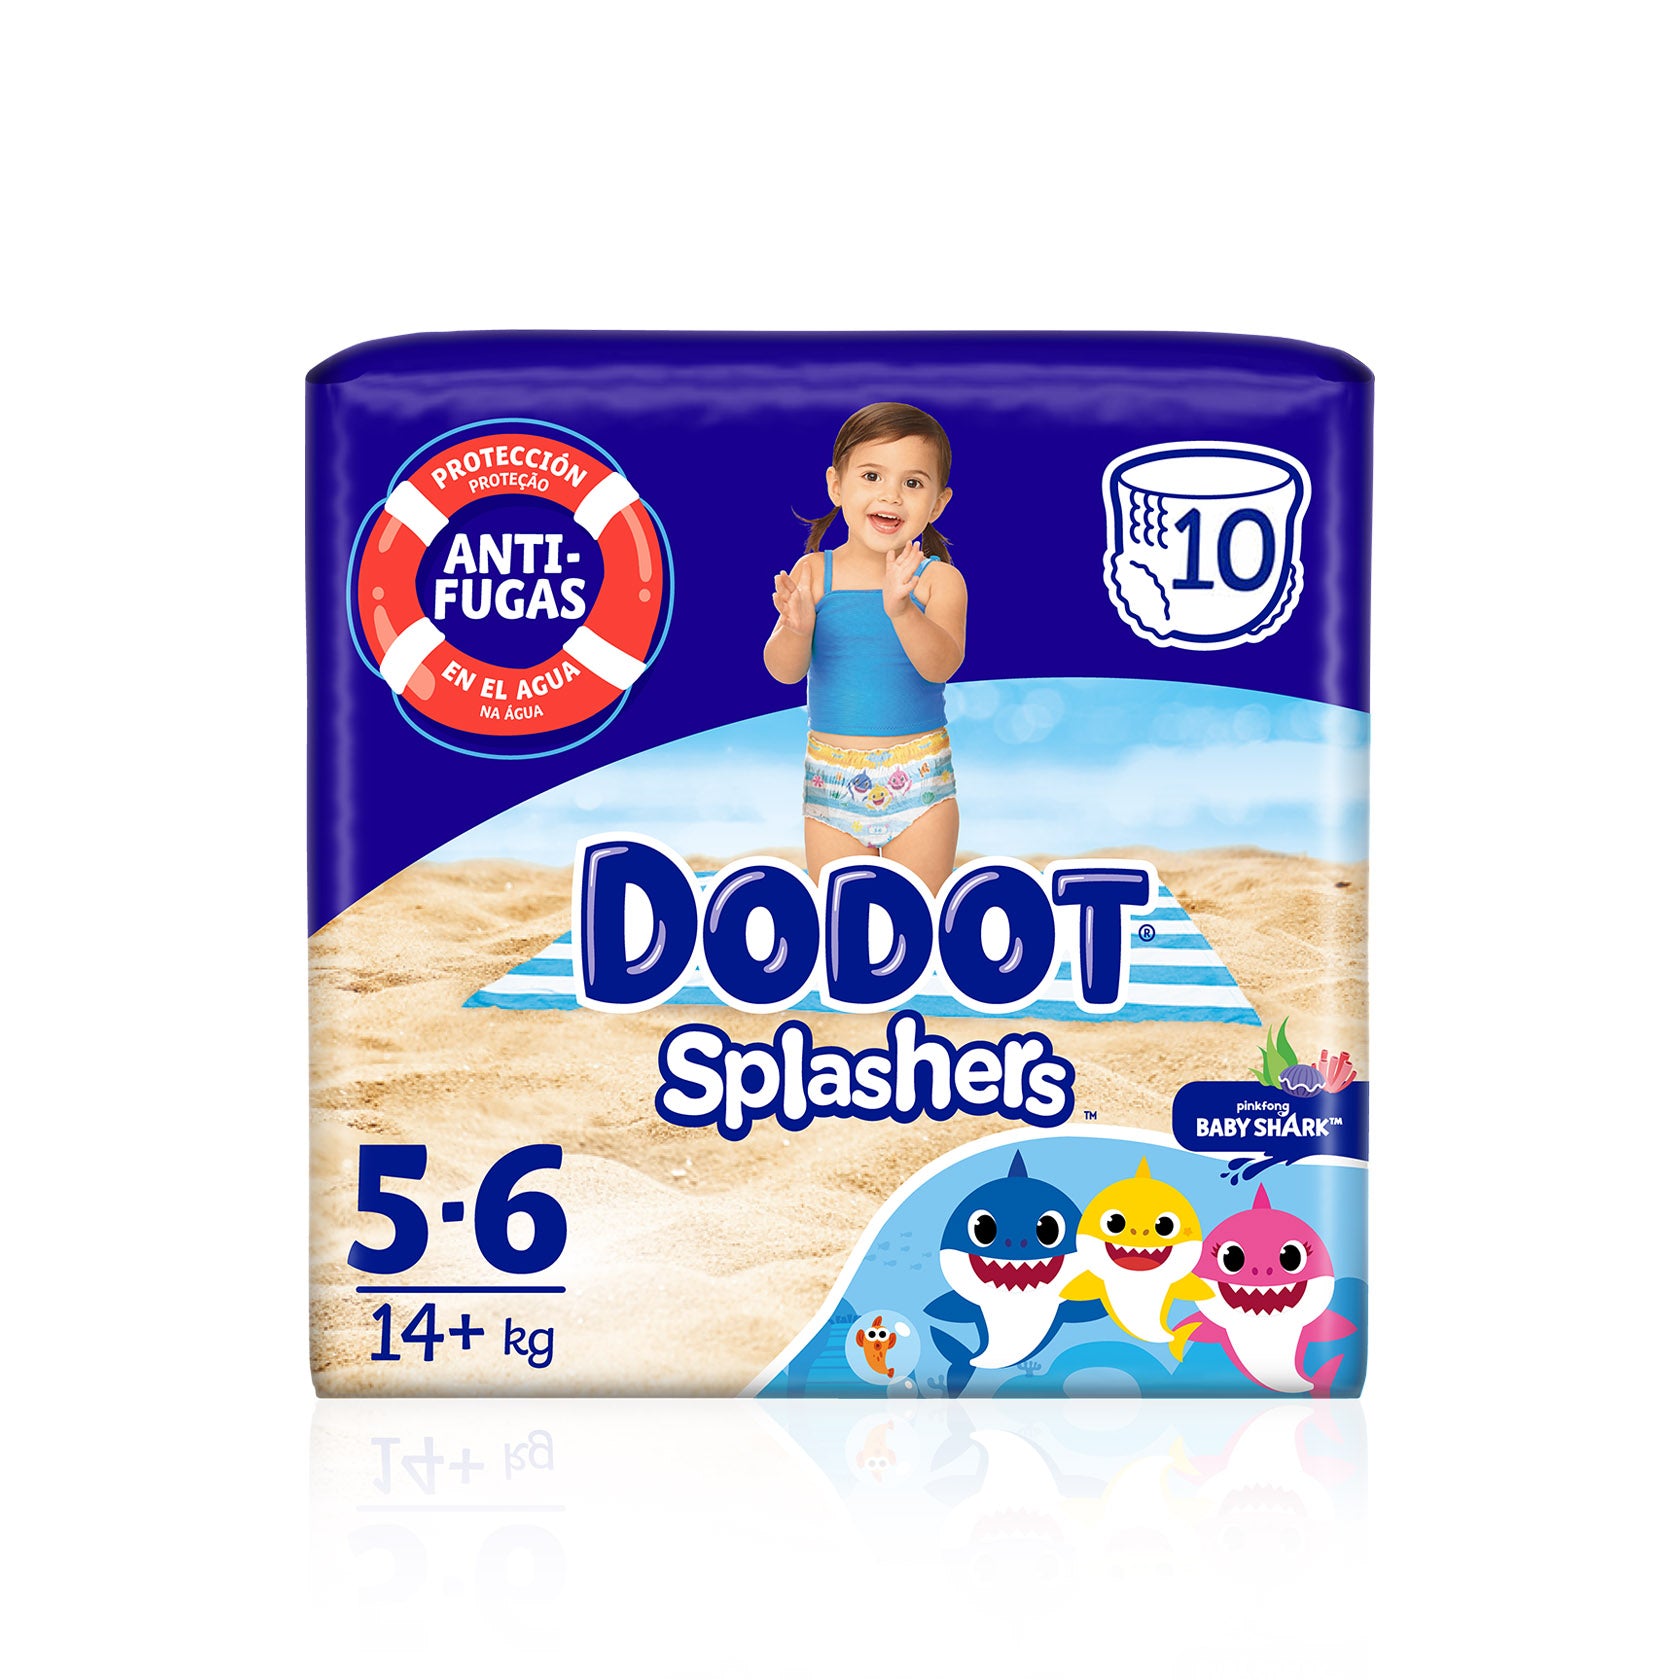 Dodot Splashers T5 (+14 kg) 10 un